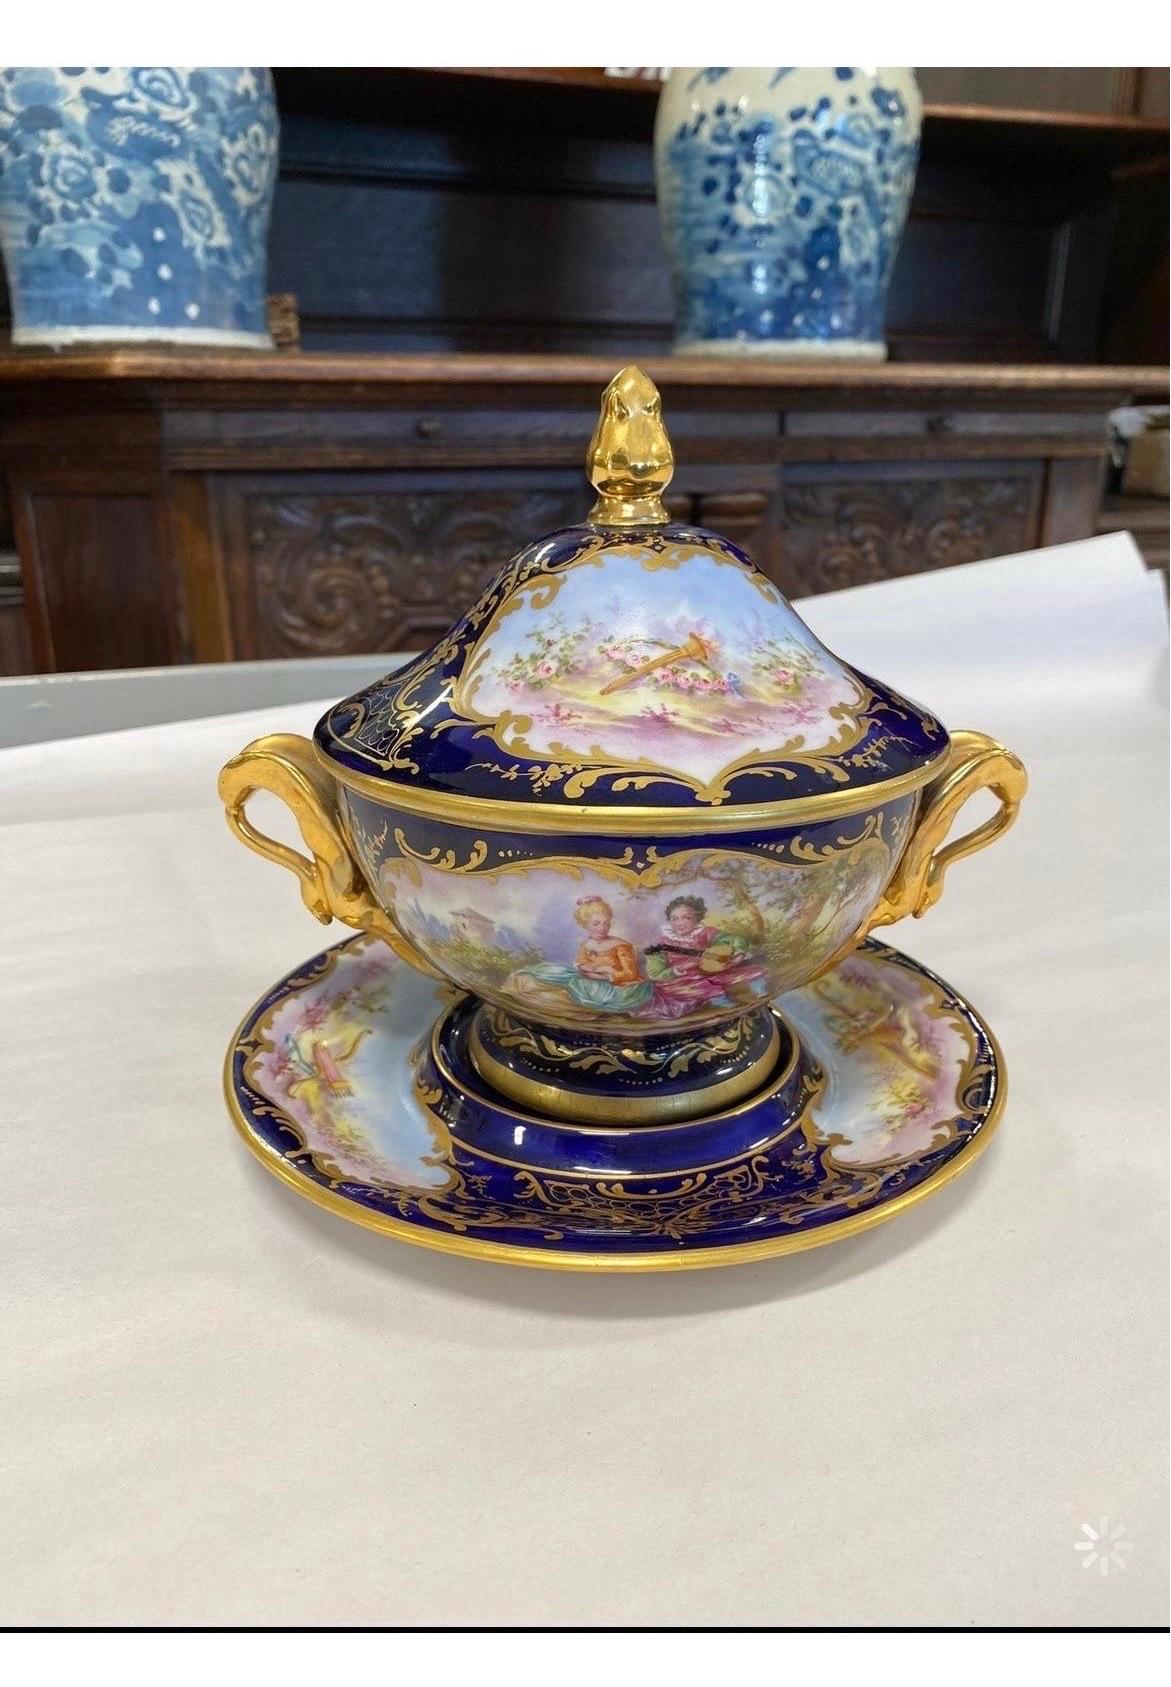 Un superbe plat couvert et un dessous d'assiette en porcelaine de style Sèvres du 19e siècle représentant une scène de courtisanerie.